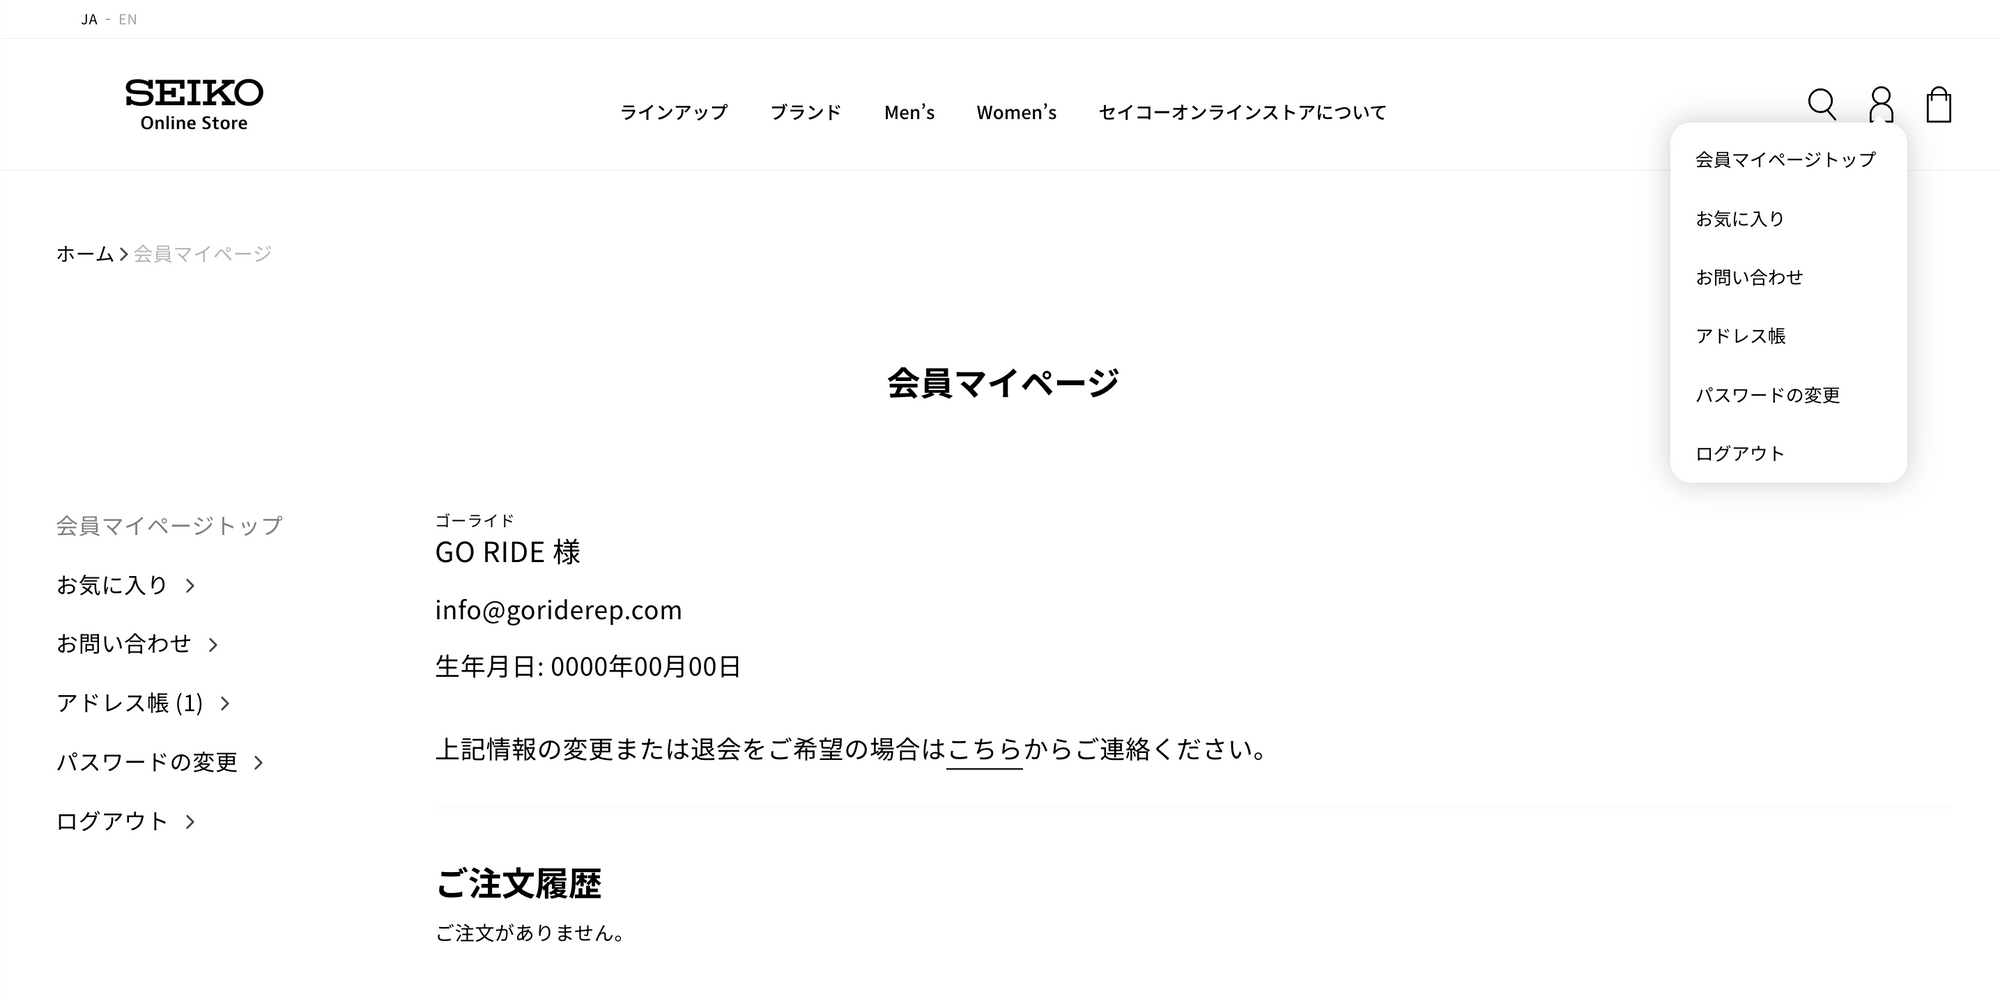 Seiko online store